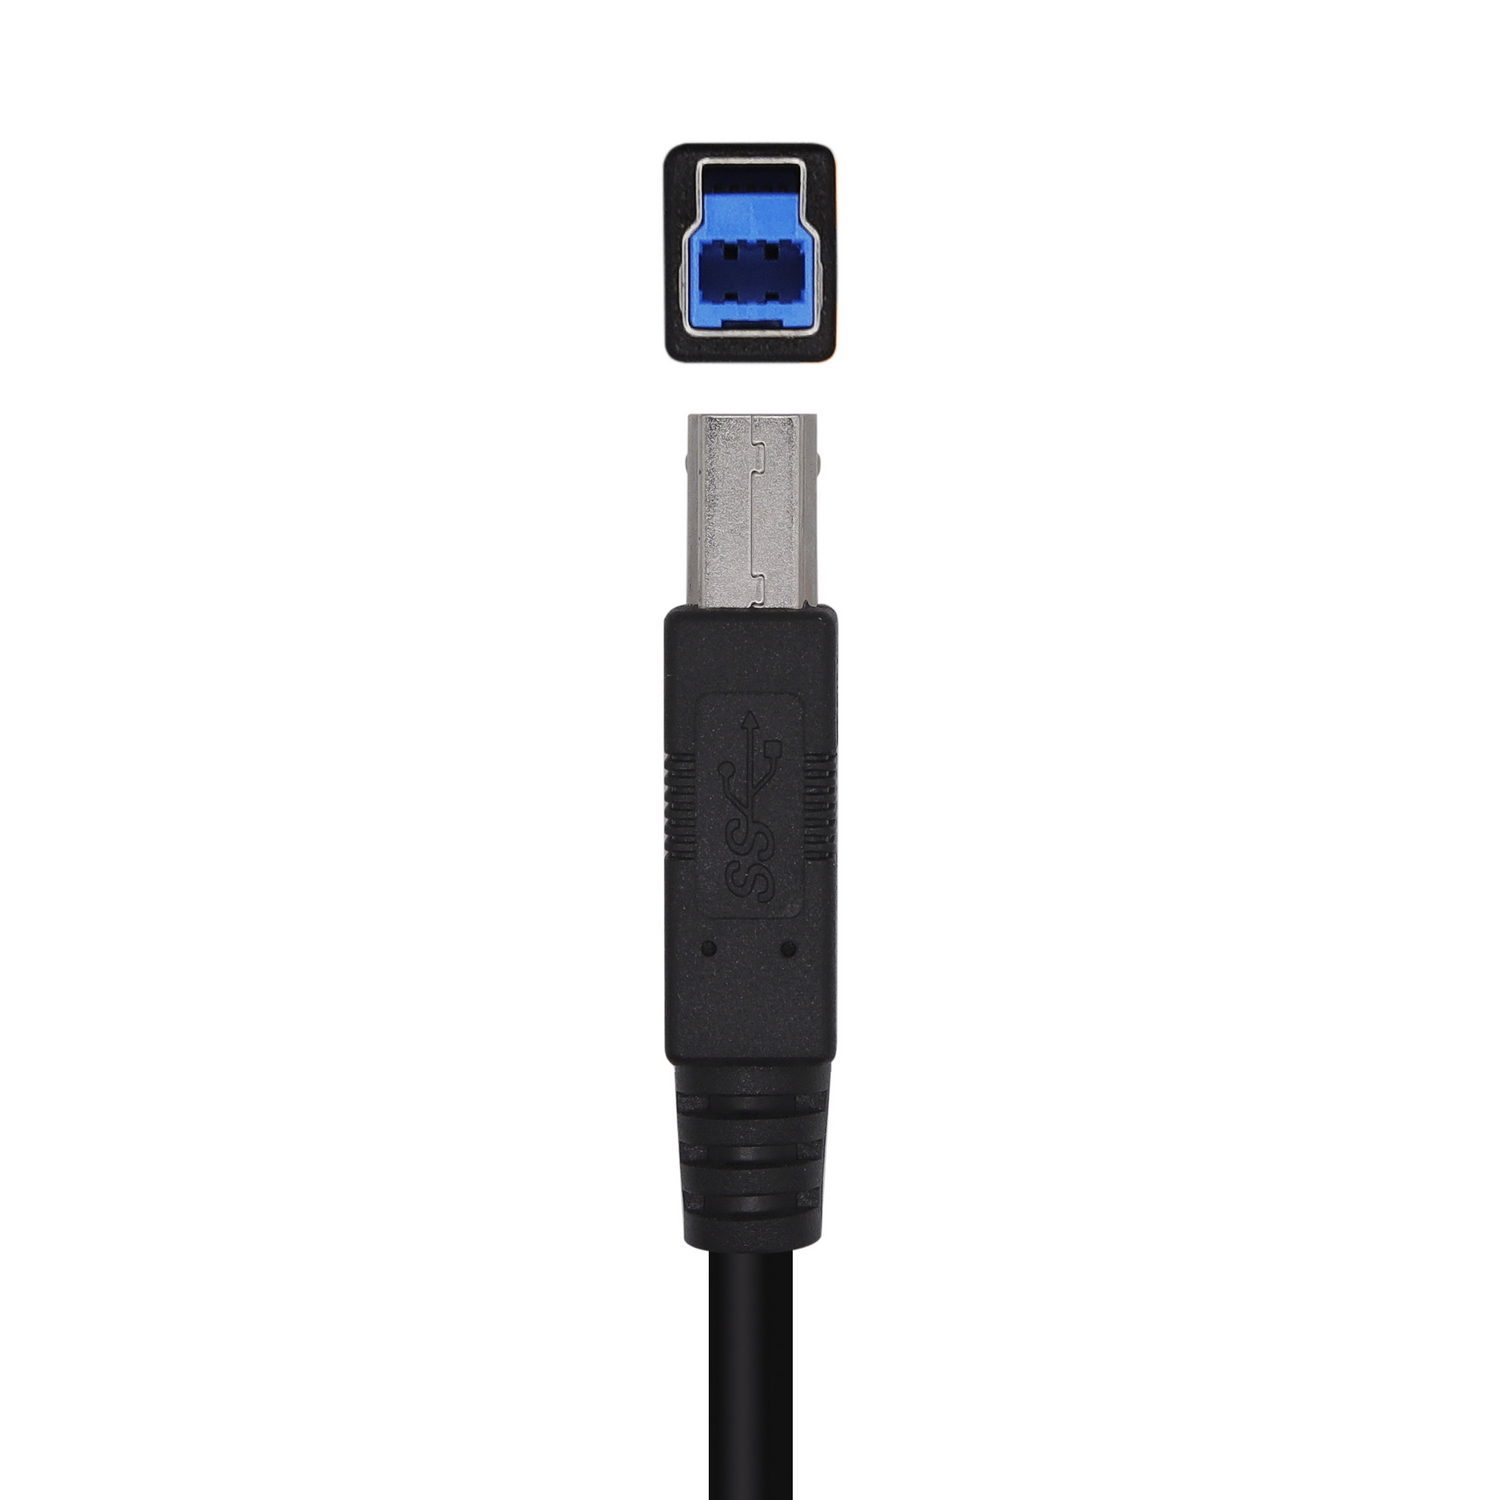 Aisens Câble USB 3.0 Imprimante Type A/MB/M - 3.0M - Couleur Noir